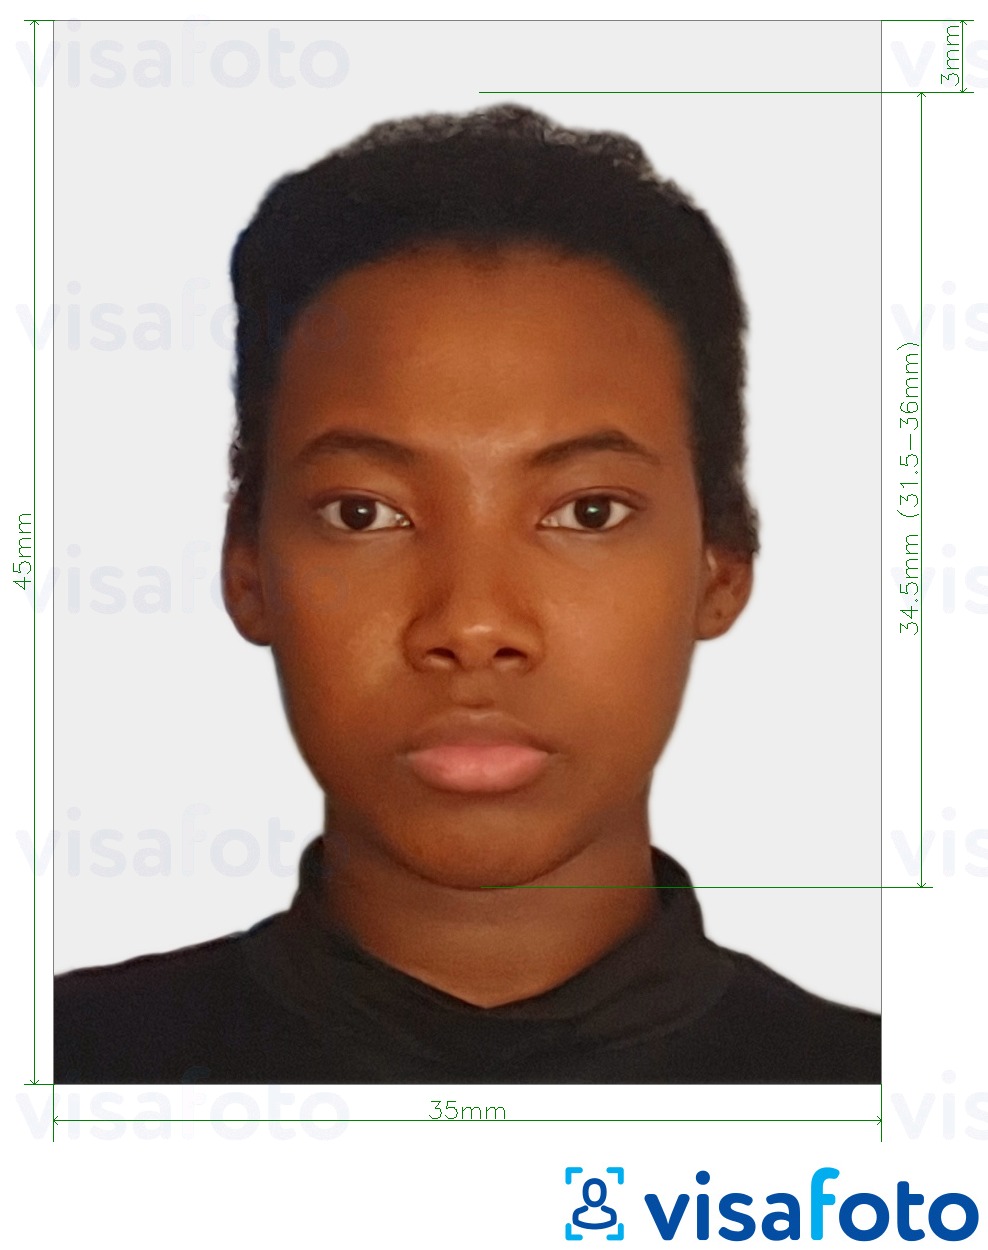 Exemple de foto per a Gabon evisa foto 35x45 mm (3.5x4.5 cm) amb la mida exacta especificada